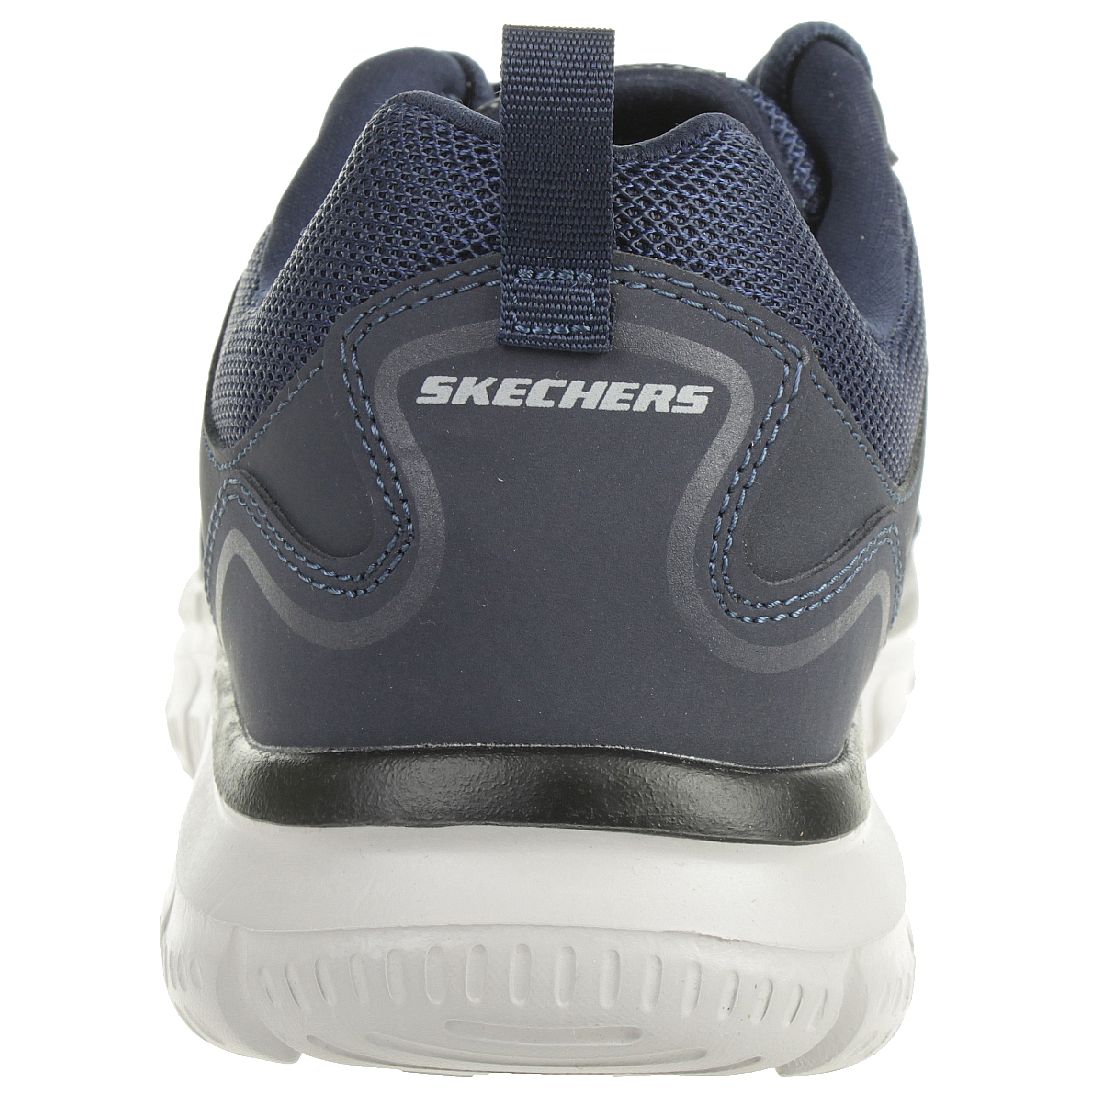 Skechers Sport Mens TRACK SCLORIC Sportschuhe/Laufschuhe Herren Schuhe Blau